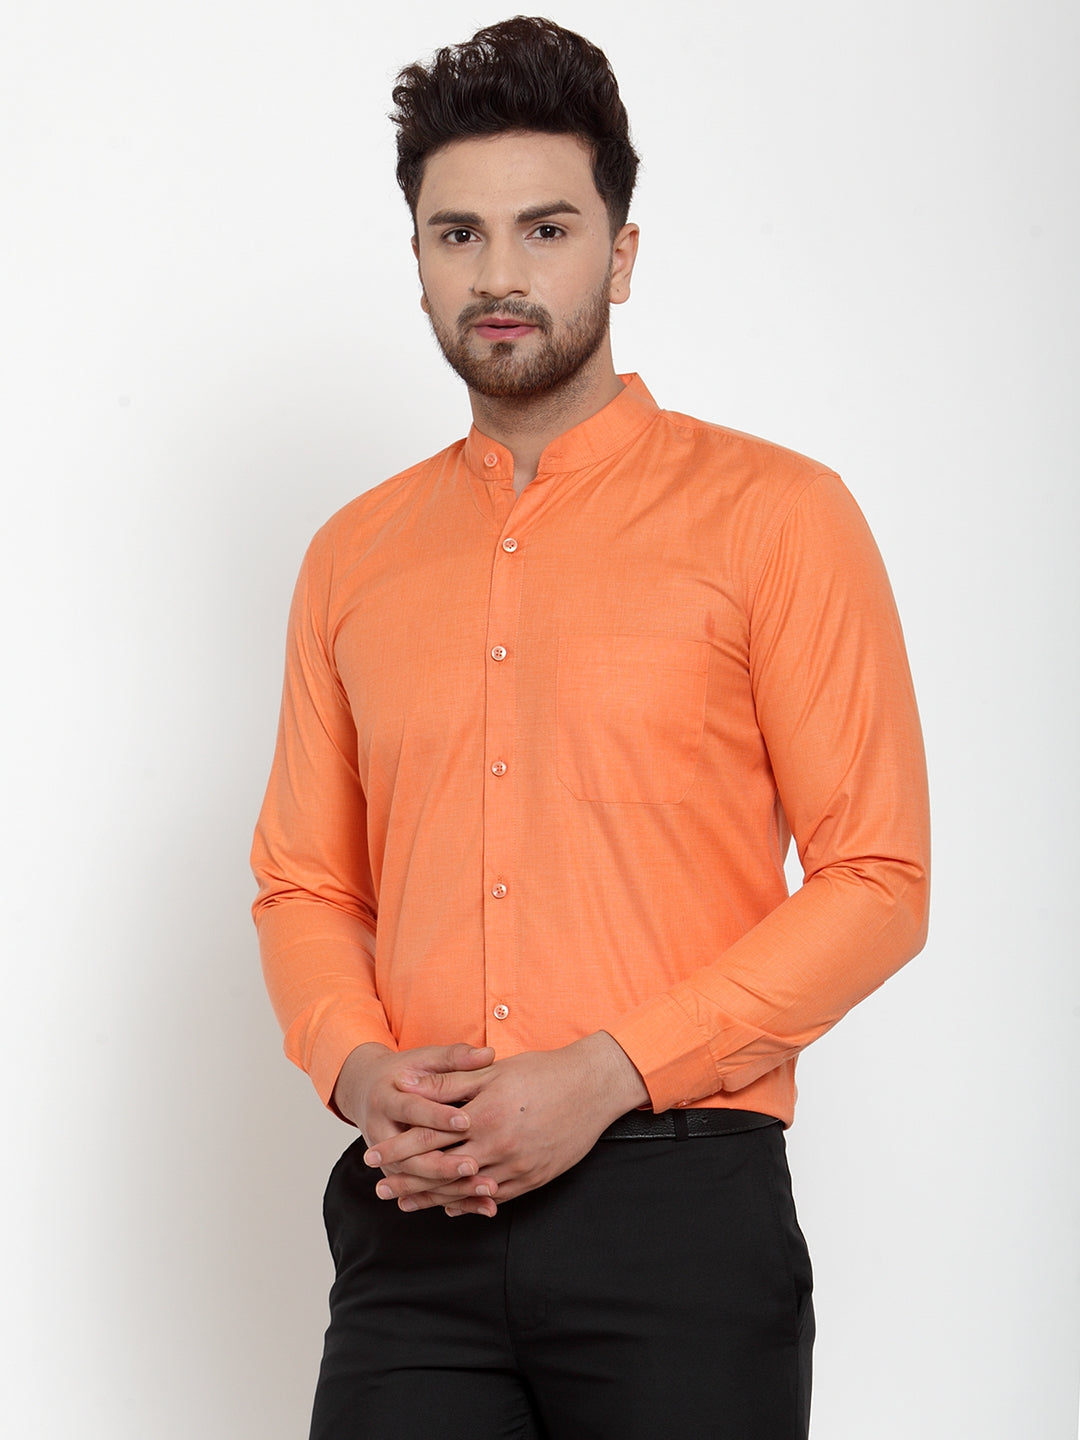 Men's Orange Cotton Solid Mandarin Collar Formal Shirts ( SF 757Orange ) - Jainish